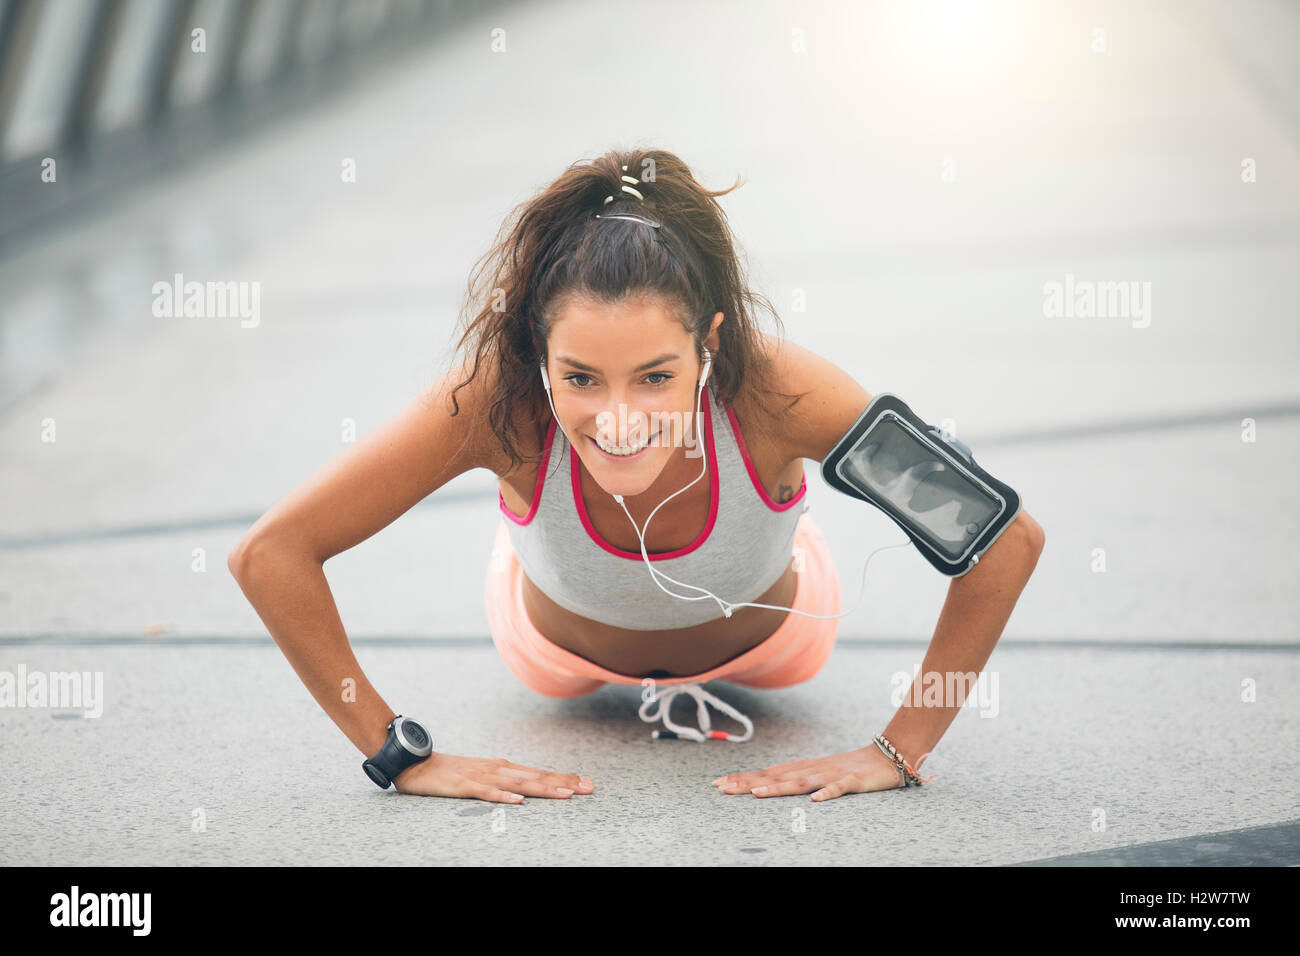 Porträt einer schönen jungen Frau doing Push-ups auf der Straße Stockfoto